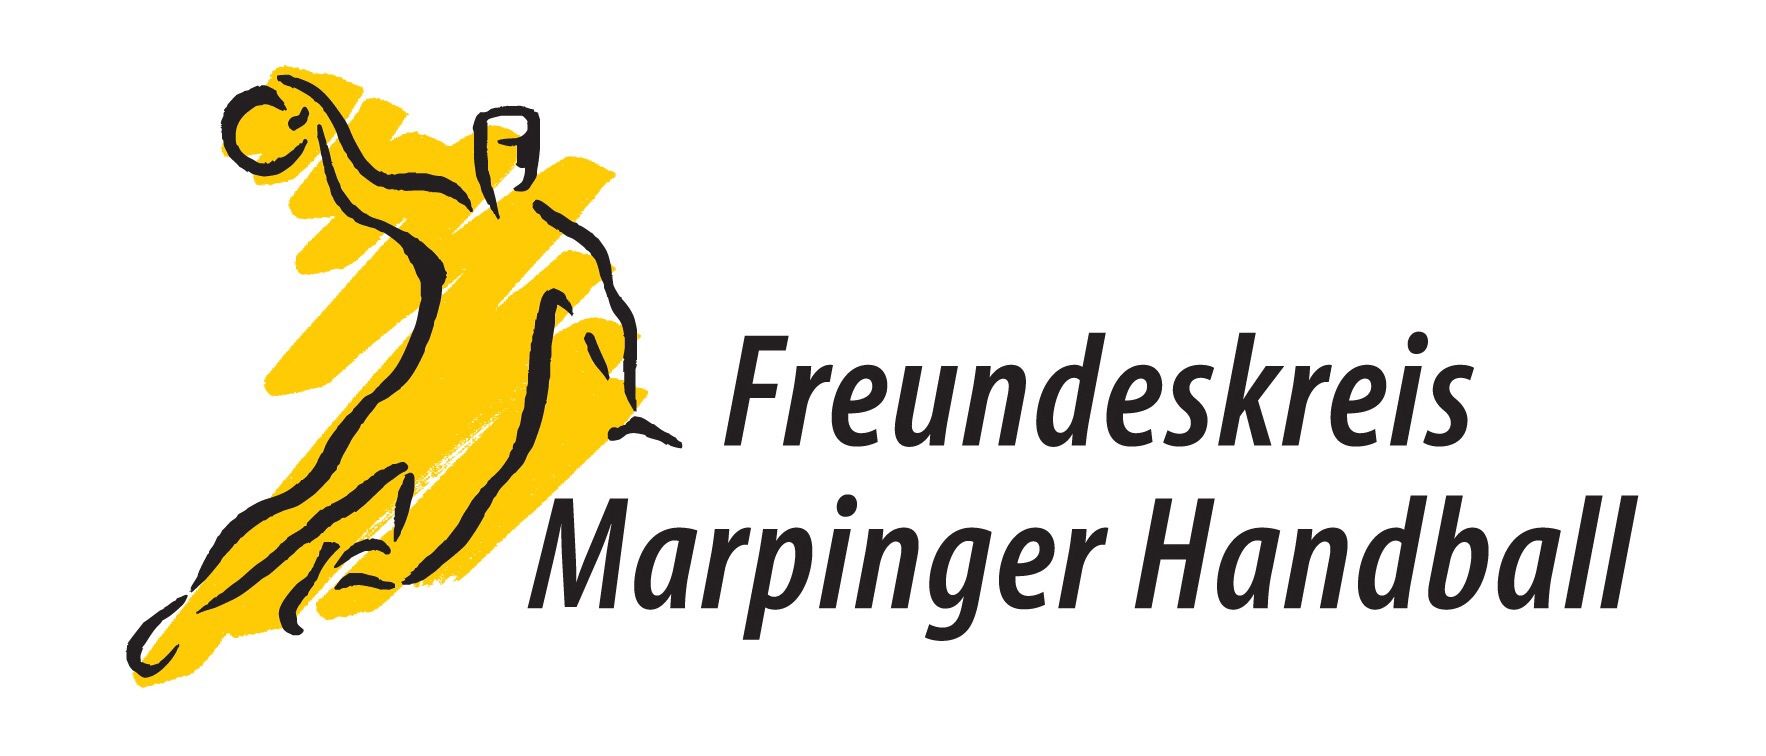 Profilbild des Vereins Freundeskreis Marpinger Handball e. V.